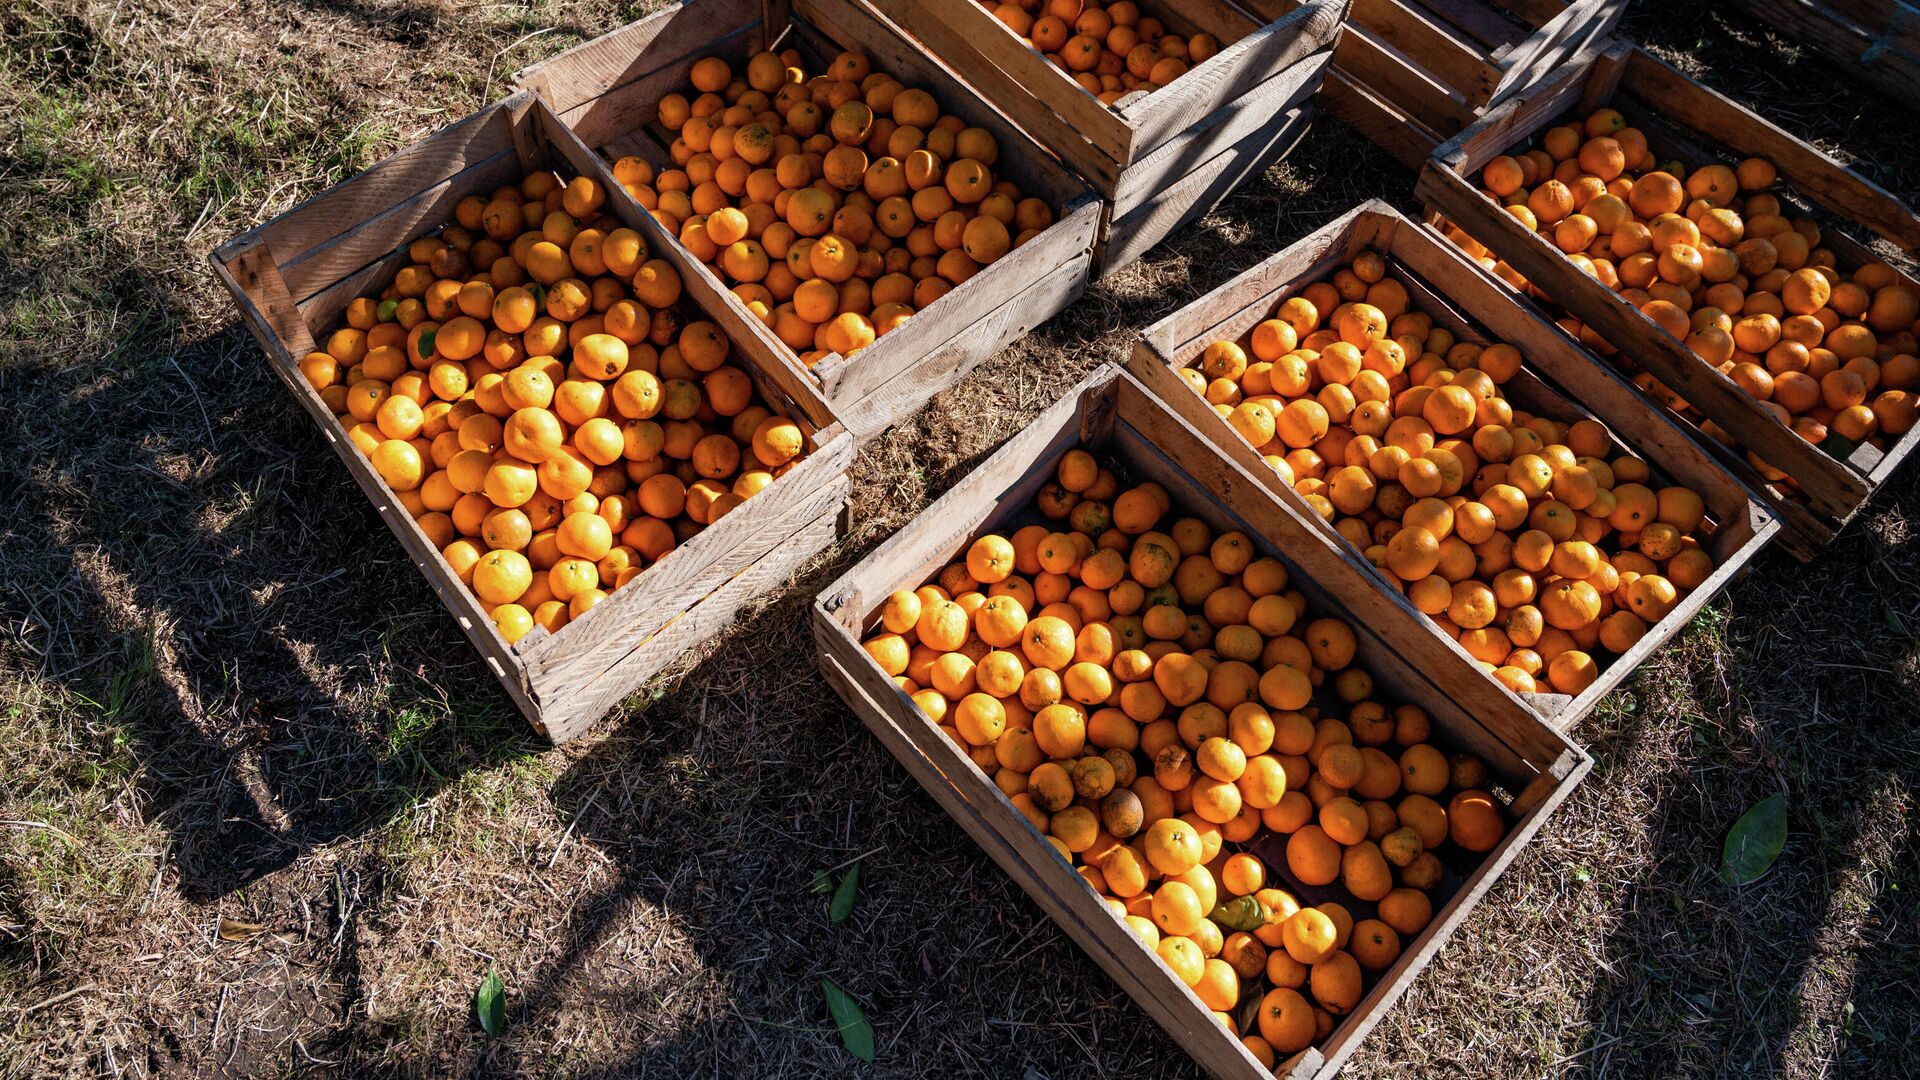 Сбор урожая мандаринов 2021 - Sputnik Грузия, 1920, 20.12.2021